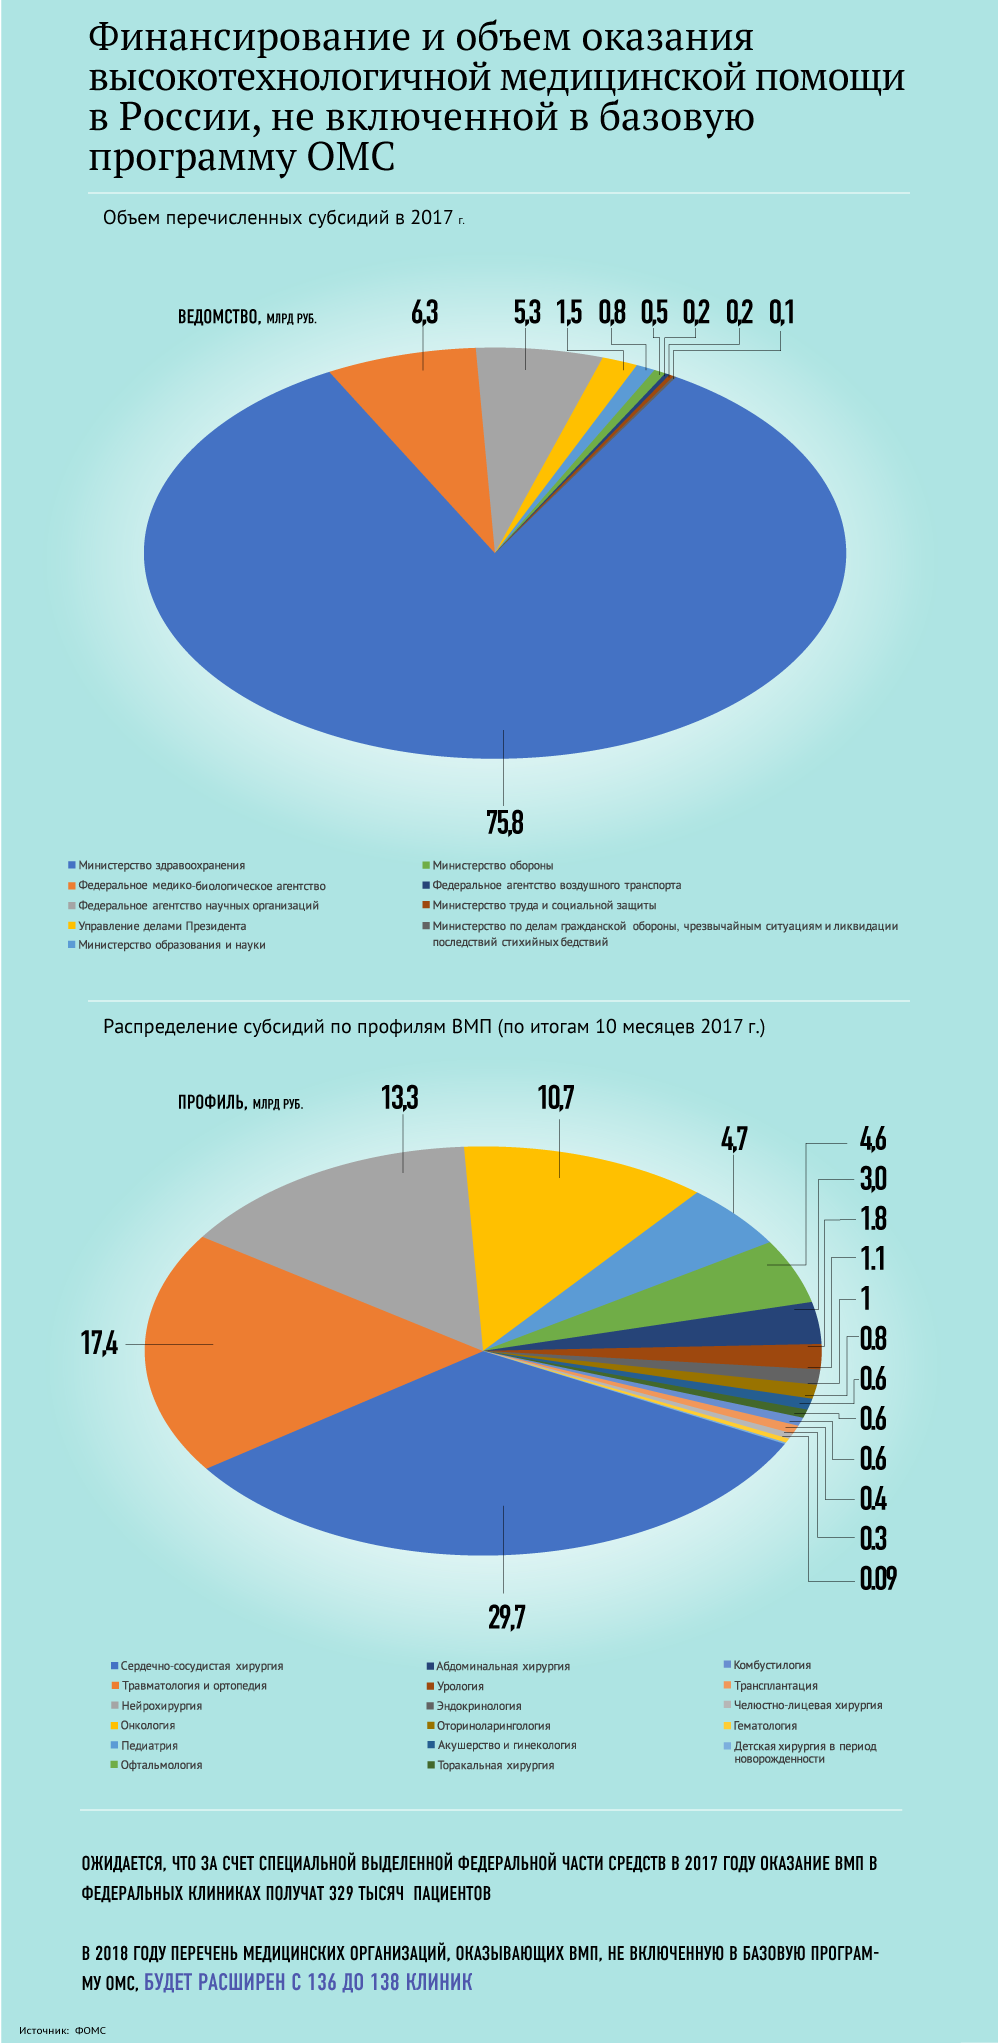 Финансирование и объем оказания высокотехнологичной медицинской помощи в России